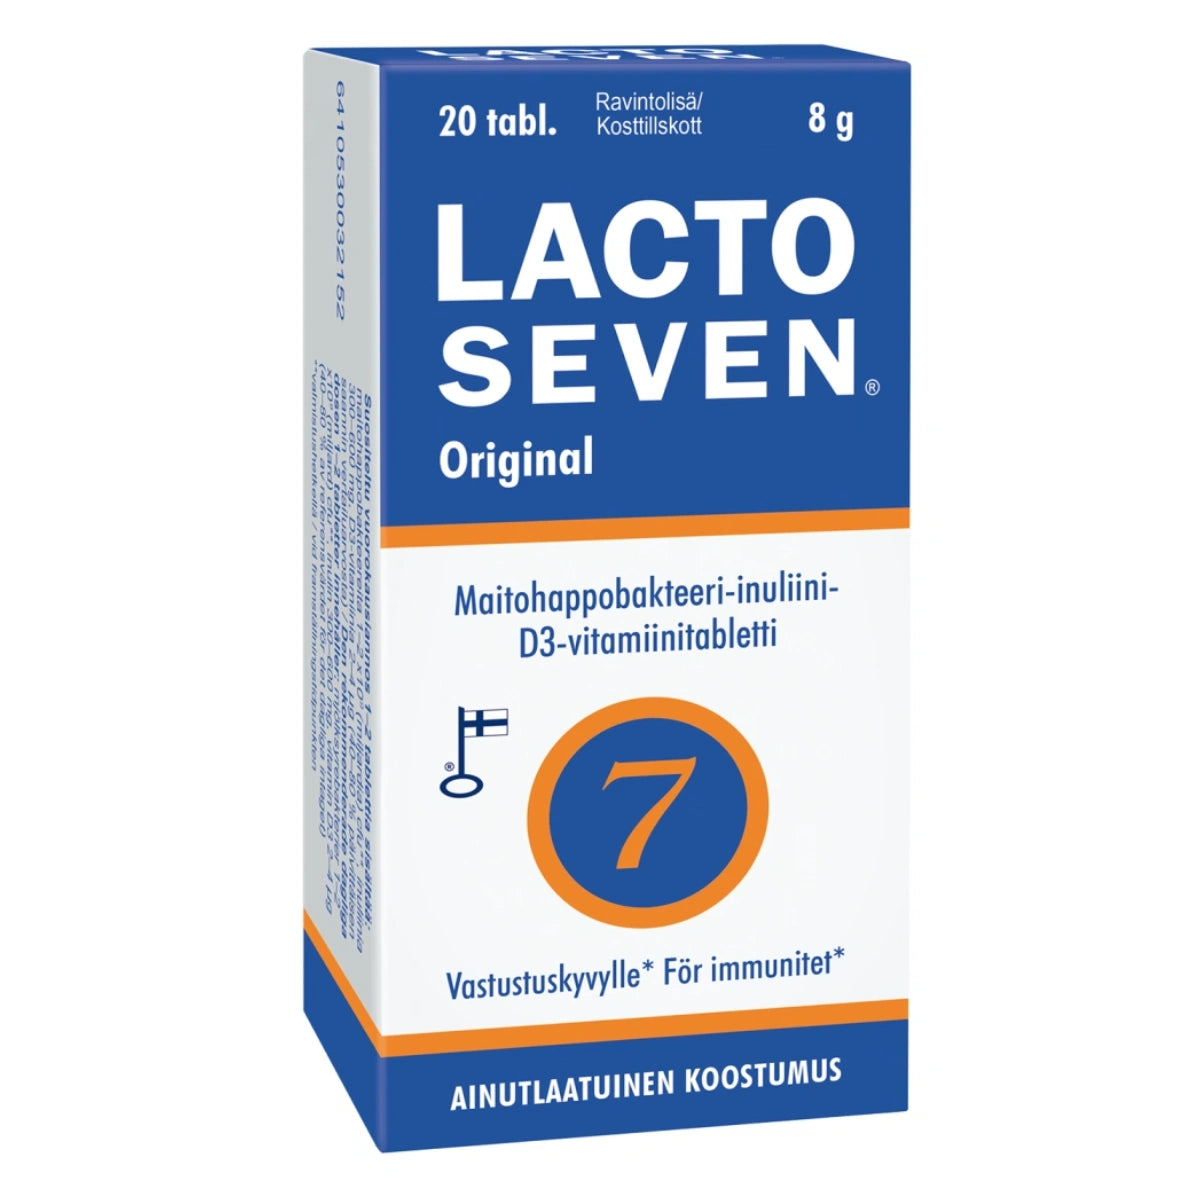 LACTO Seven tabletti 20 kpl sisältää seitsemää erilaista kylmäkuivattua, luonnollista maitohappobakteerikantaa